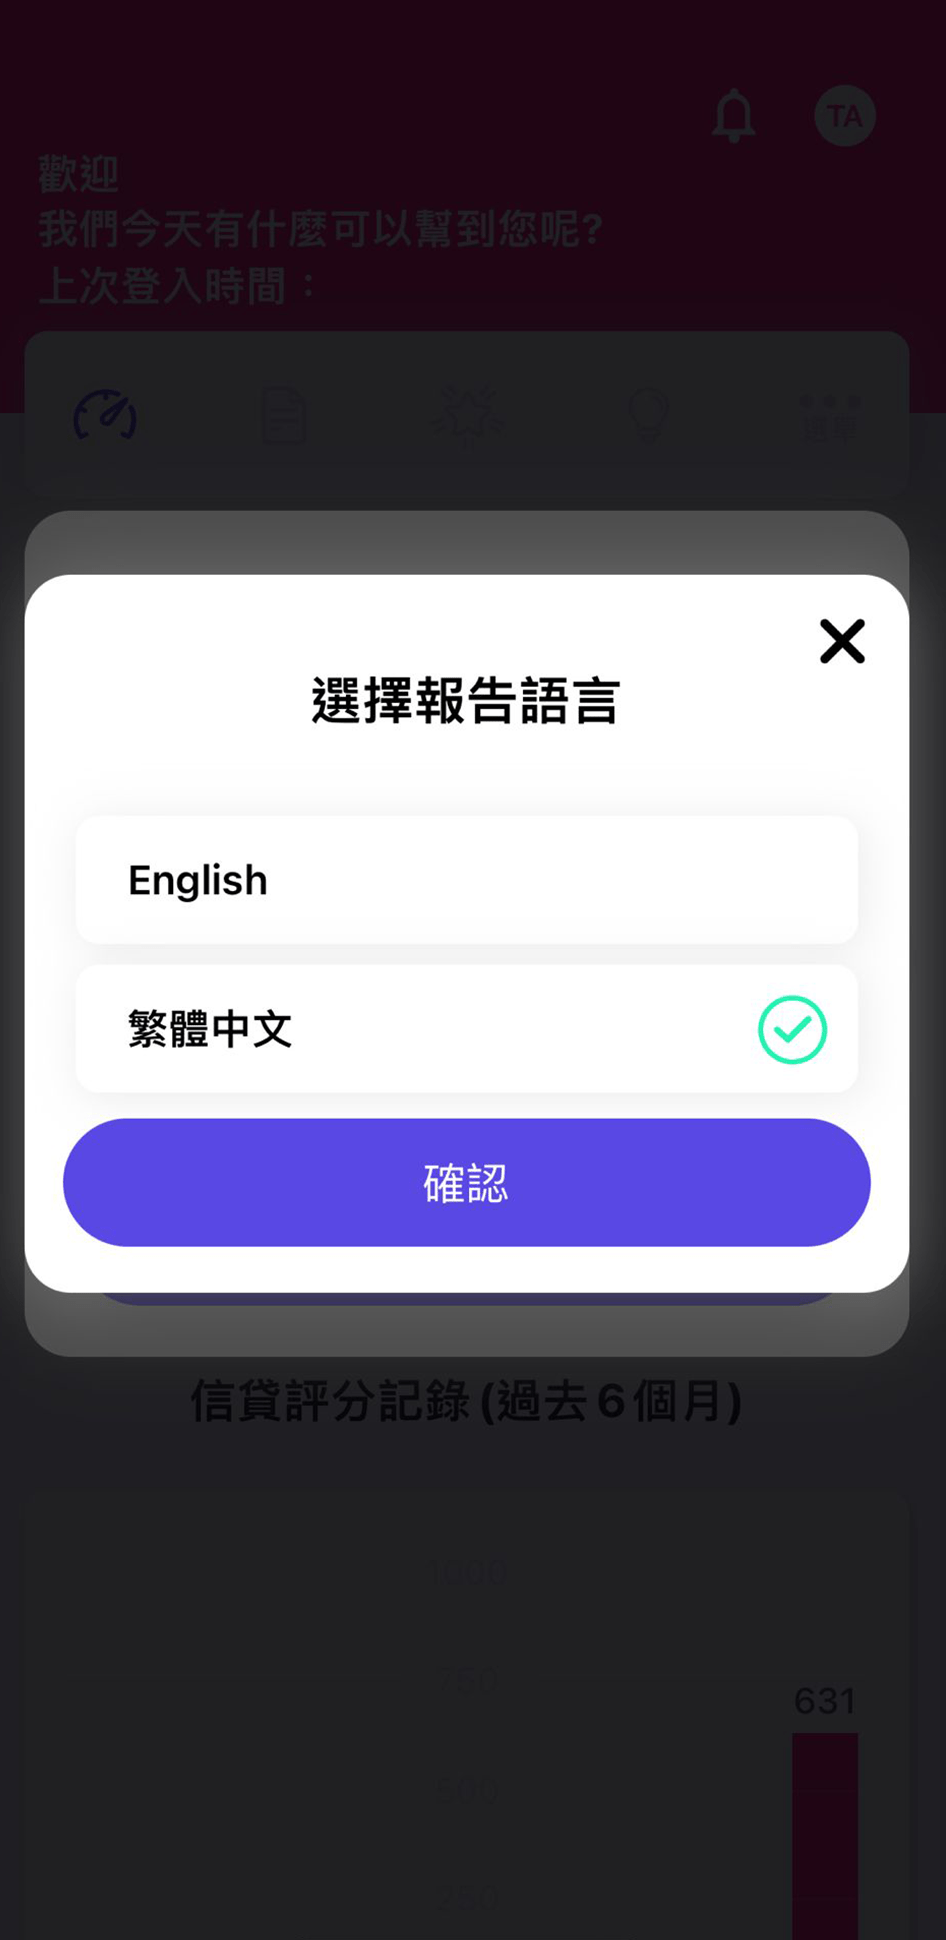 步骤 2：选择报告语言，支援「繁体中文版」或「英文版」两种语言版本